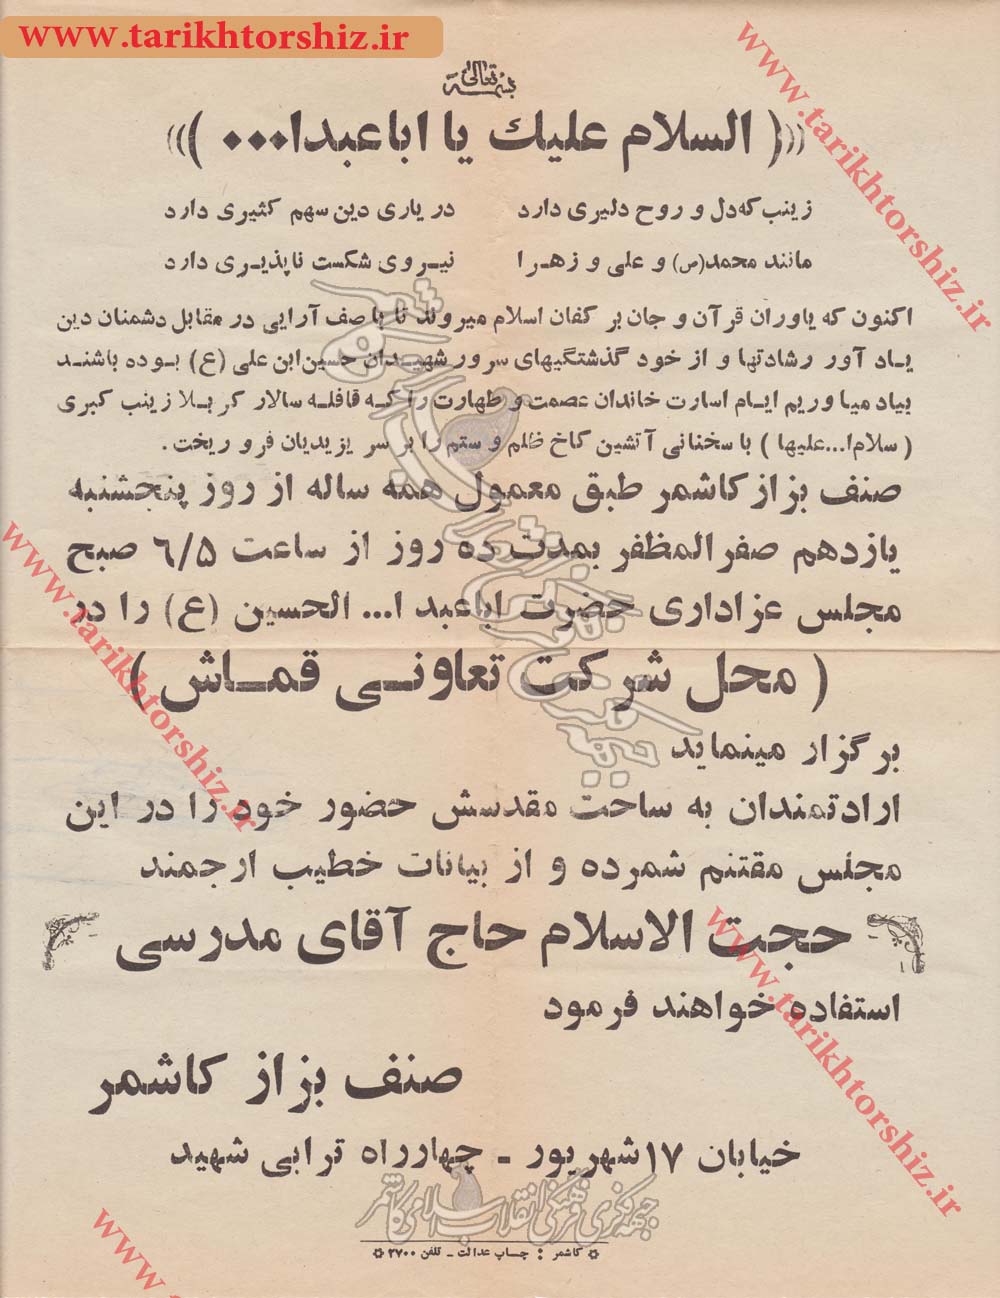 نمونه اطلاعیه صنف بزاز کاشمر برای شرکت در مراسم سوگواری امام حسین ع  در دهه 60